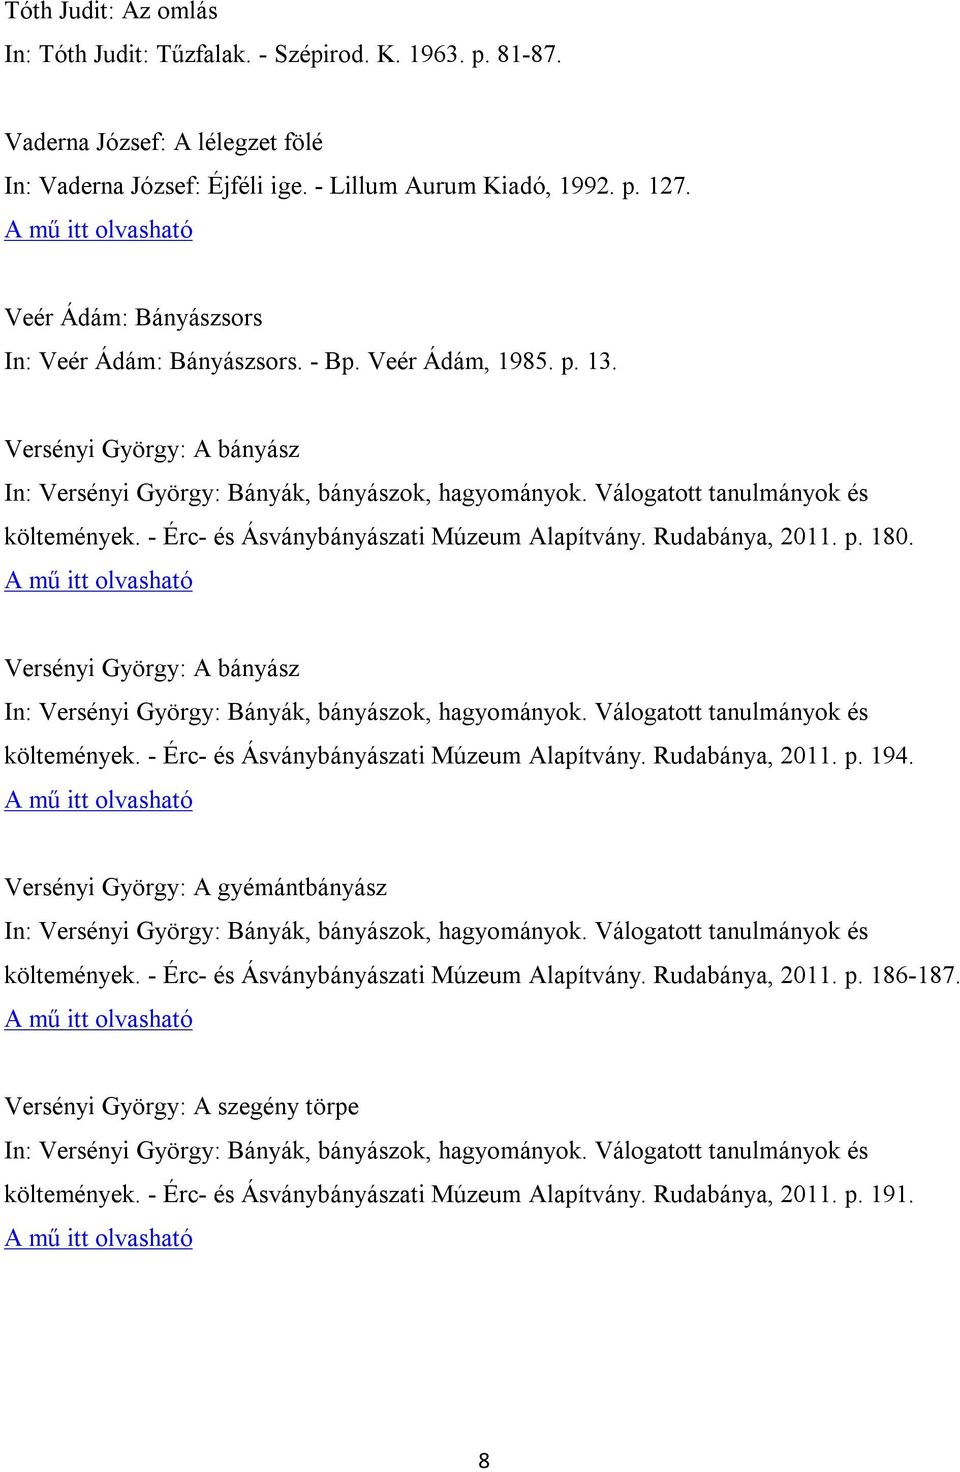 Rudabánya, 2011. p. 180. Versényi György: A bányász költemények. - Érc- és Ásványbányászati Múzeum Alapítvány. Rudabánya, 2011. p. 194.